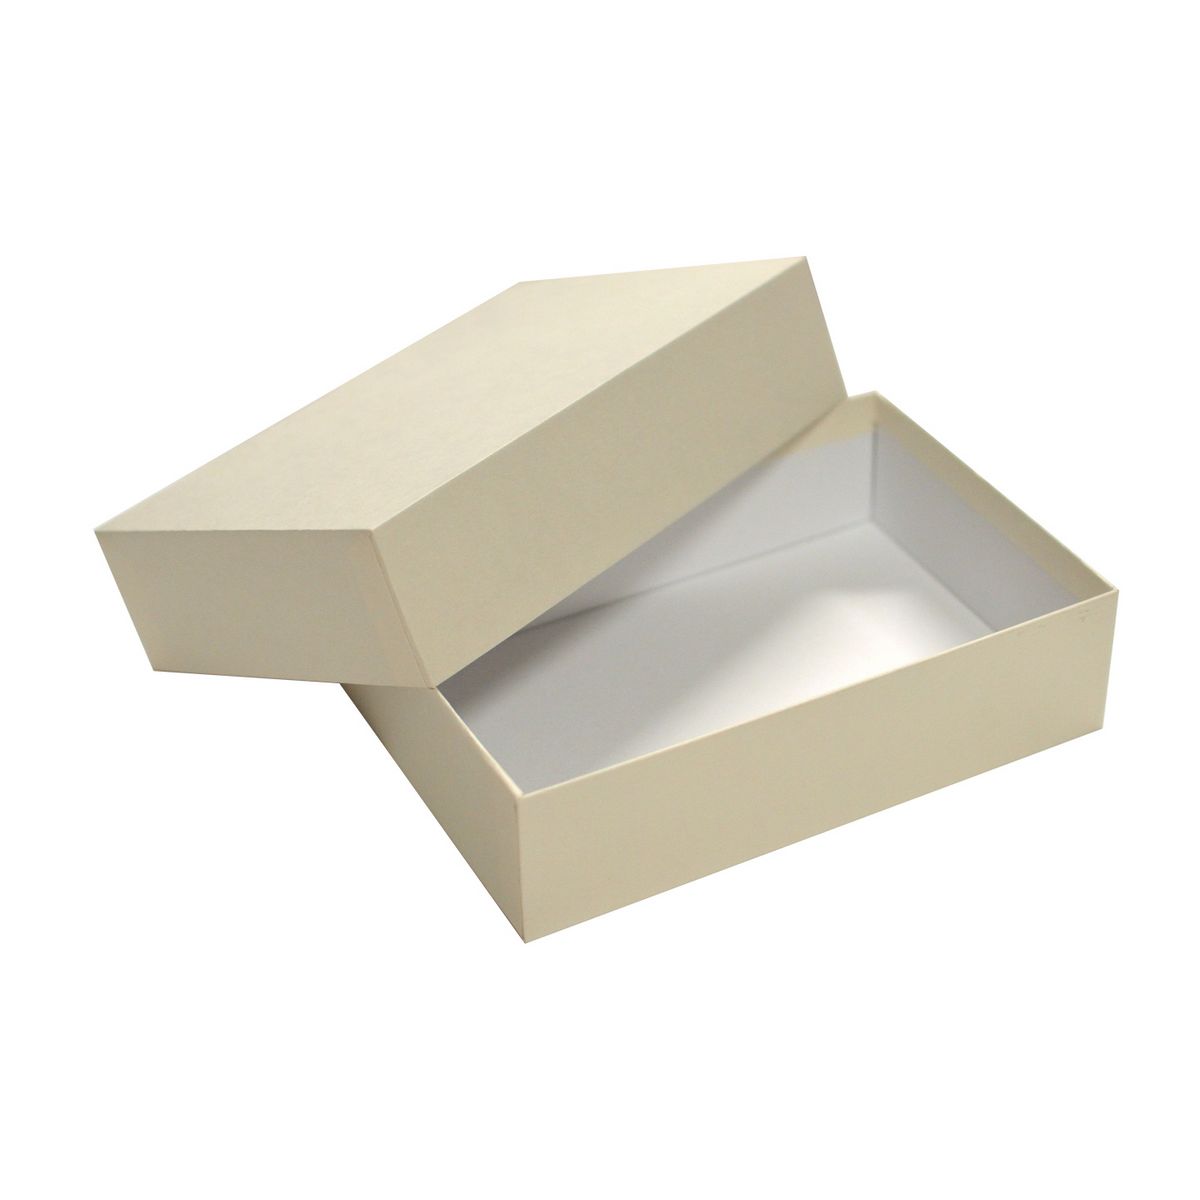 東京リボン/ピタットボックス 1 ホワイト/36-88000-1【01】【取寄】 ラッピング用品 、梱包資材 ラッピング箱・ギフトボックス ペーパーボックス(紙箱)